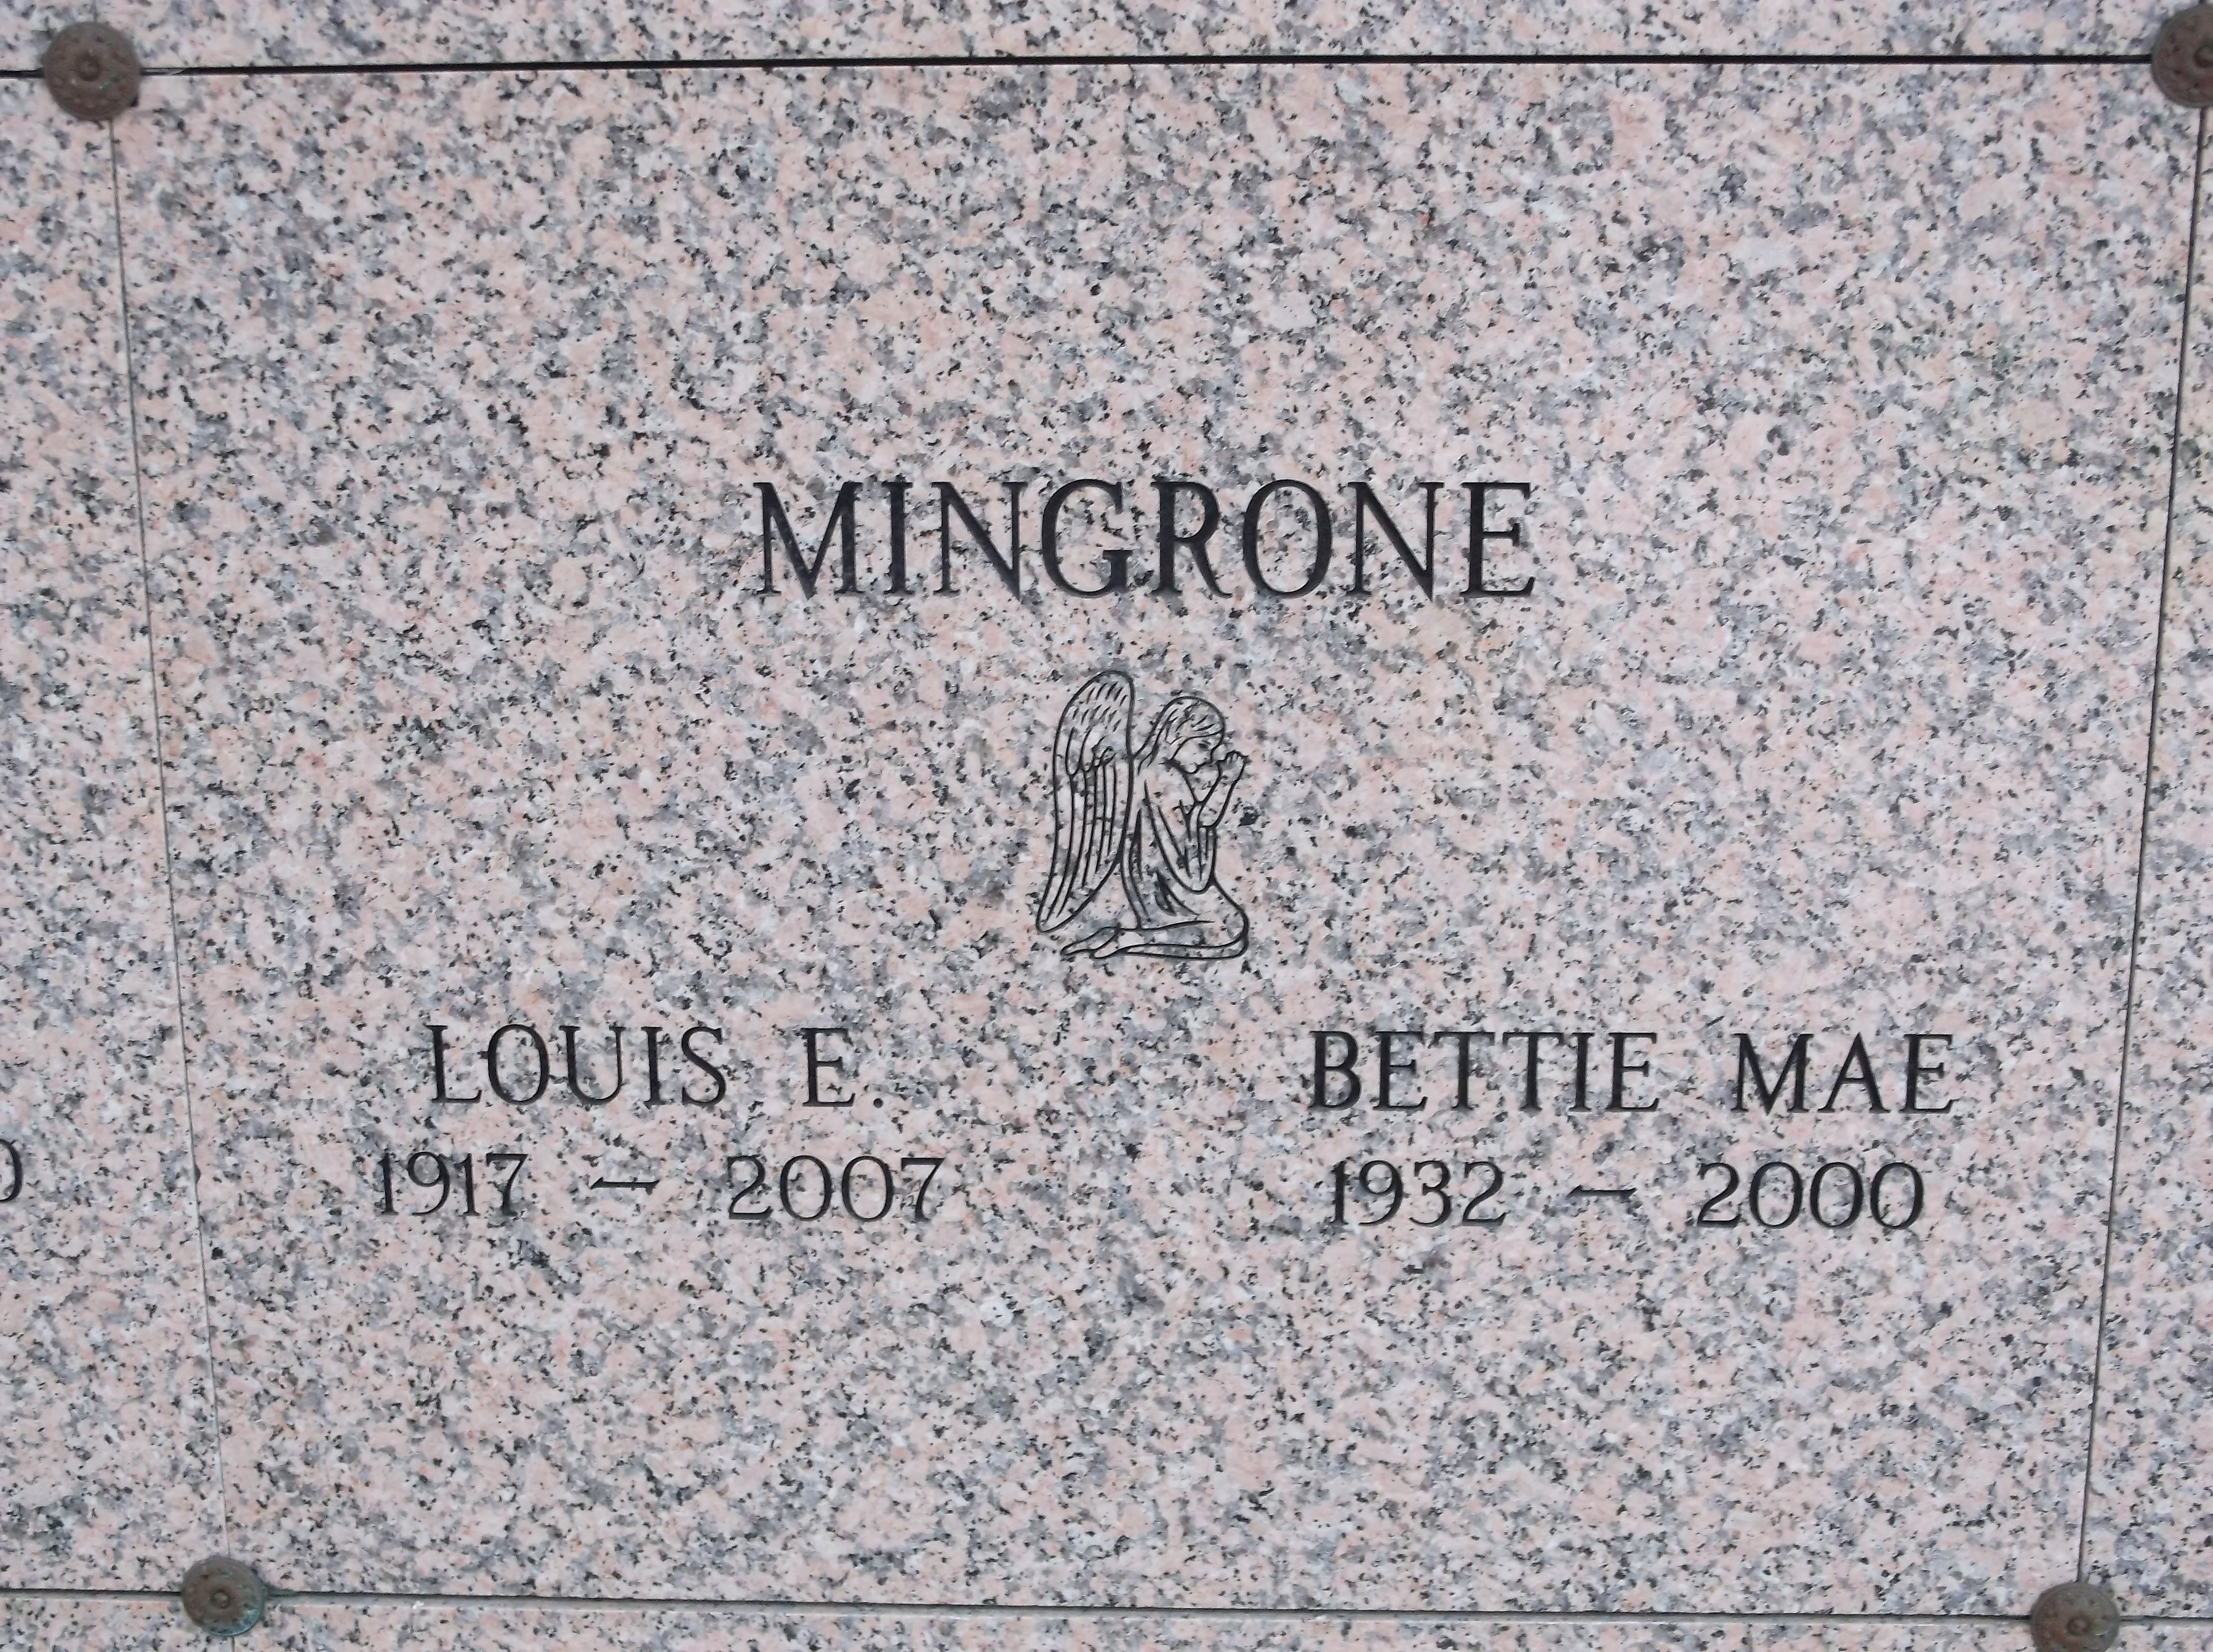 Louis E Mingrone